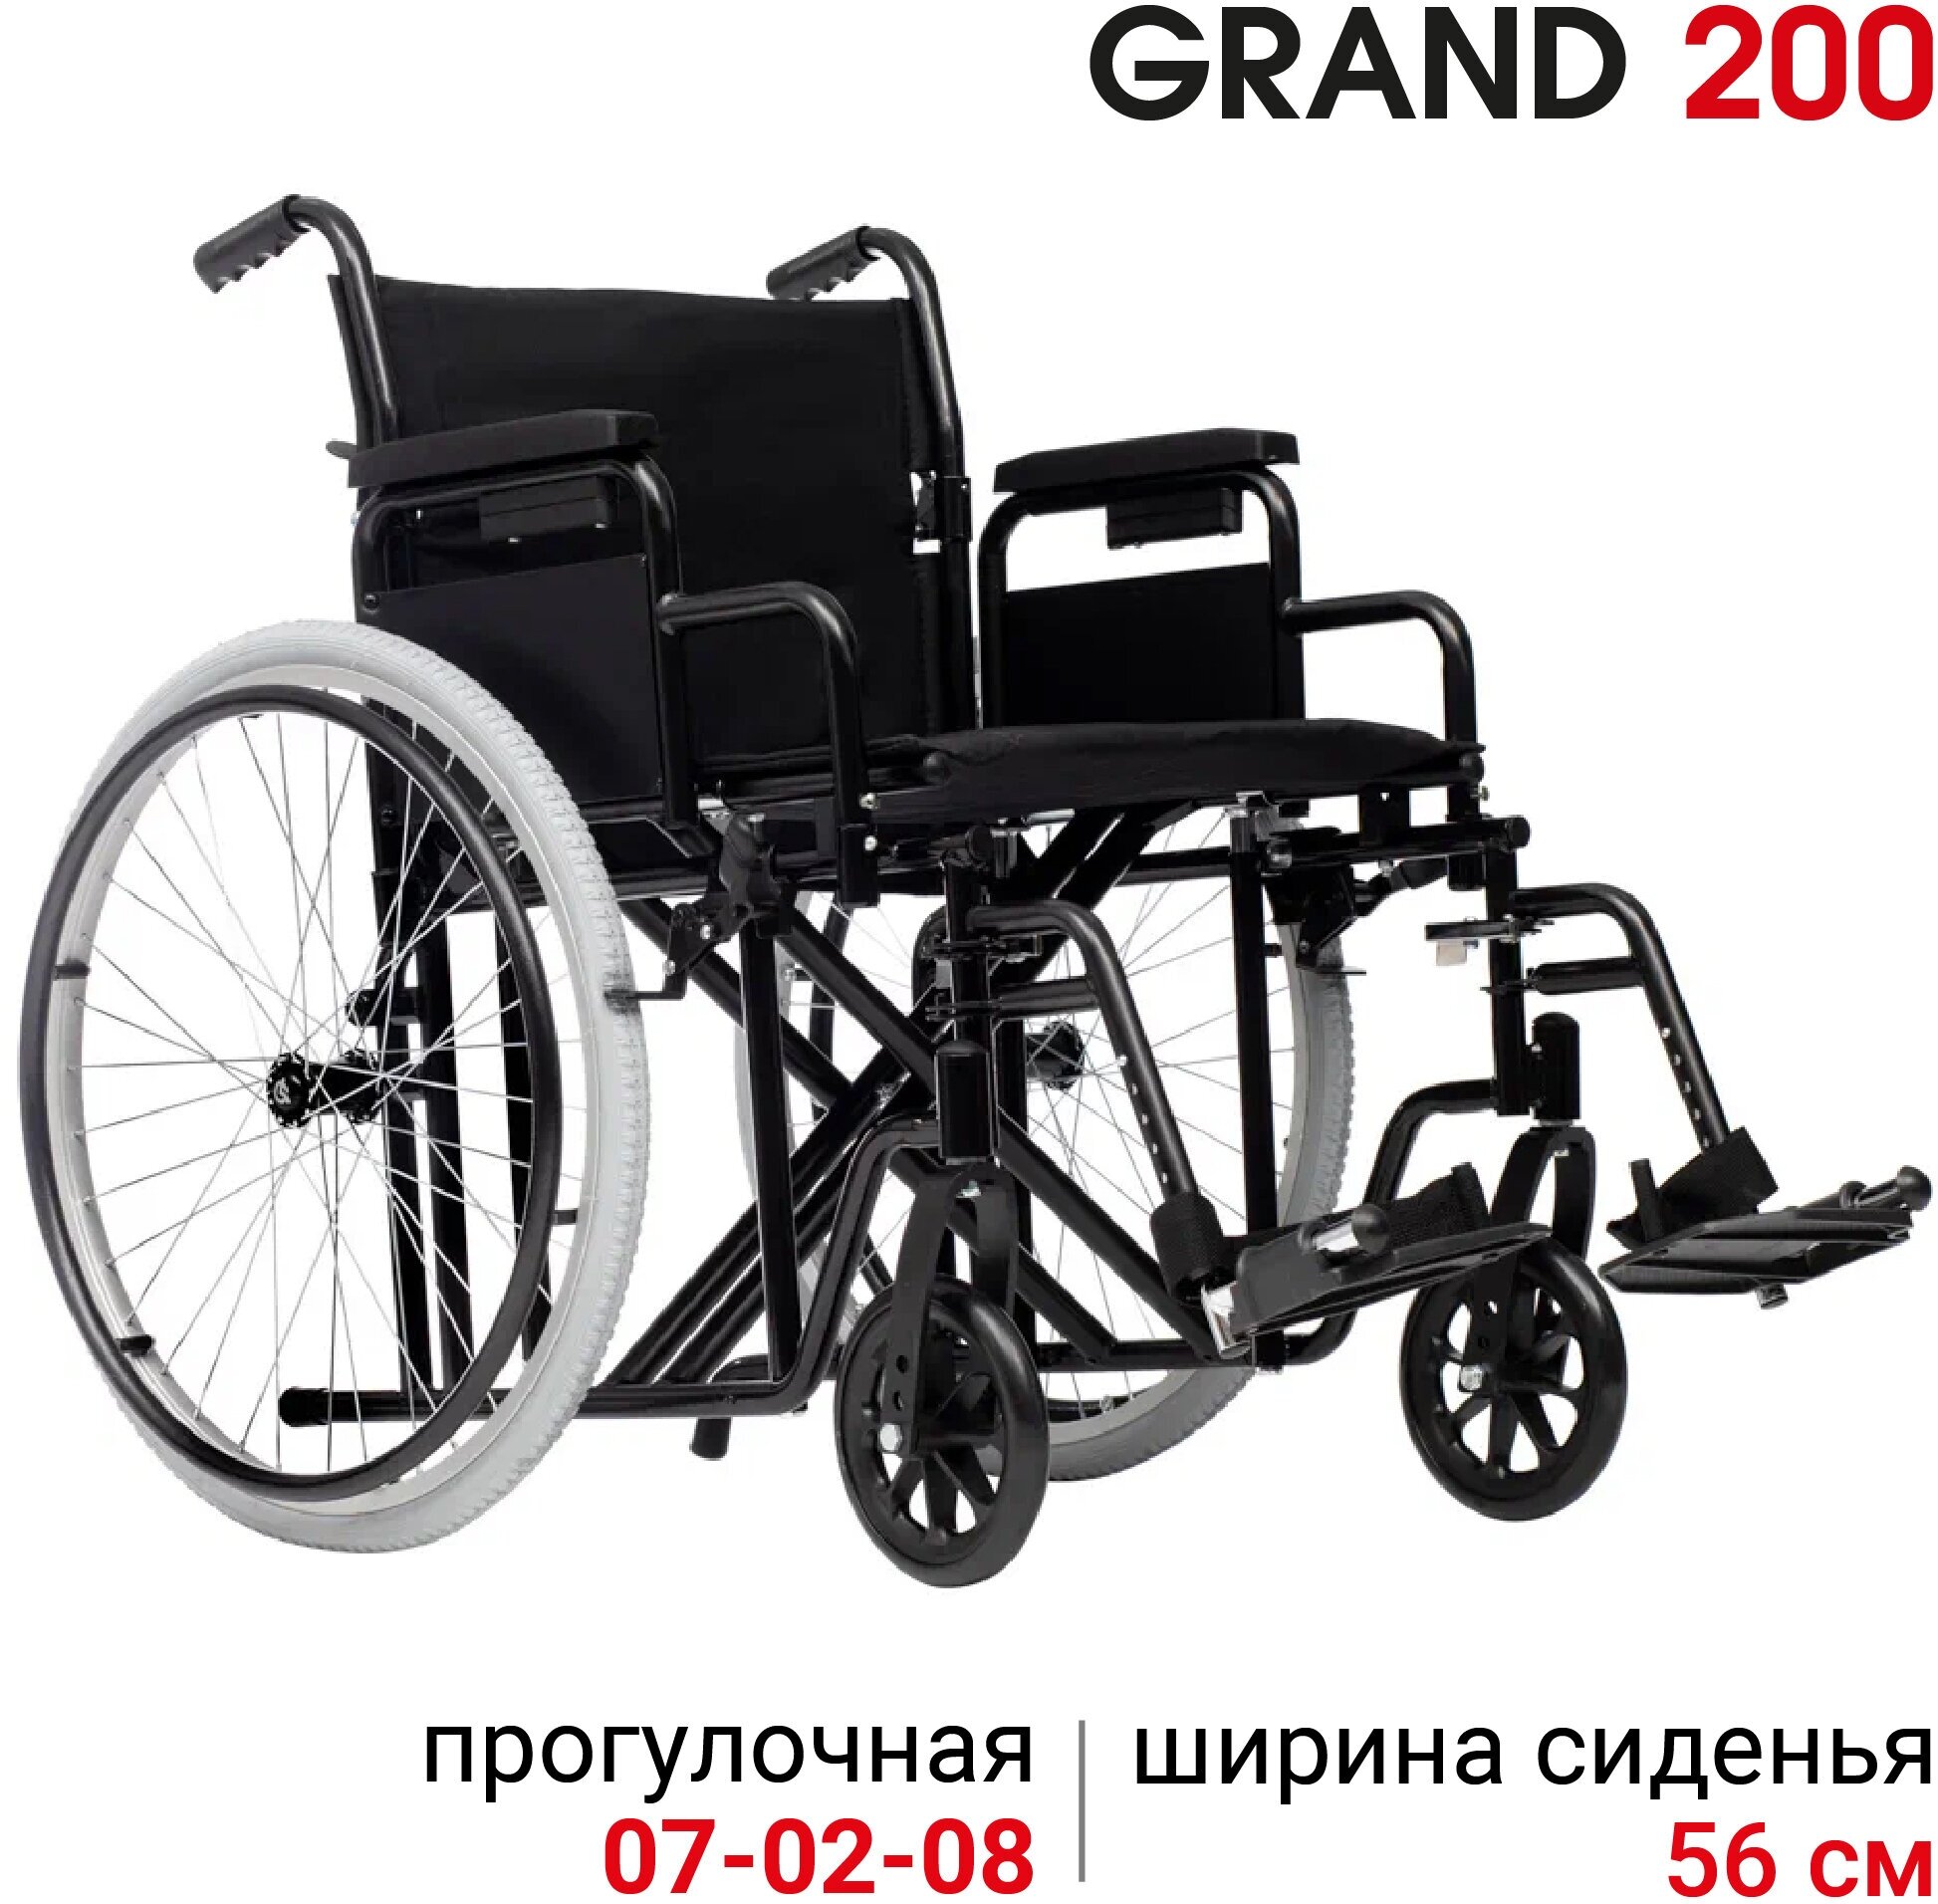 Кресло-коляска инвалидная прогулочная механическая повышенной грузоподъемности Ortonica Trend 25/Grand 200 ширина сиденья 56 см передние литые колеса задние пневматические, код 07-02-08